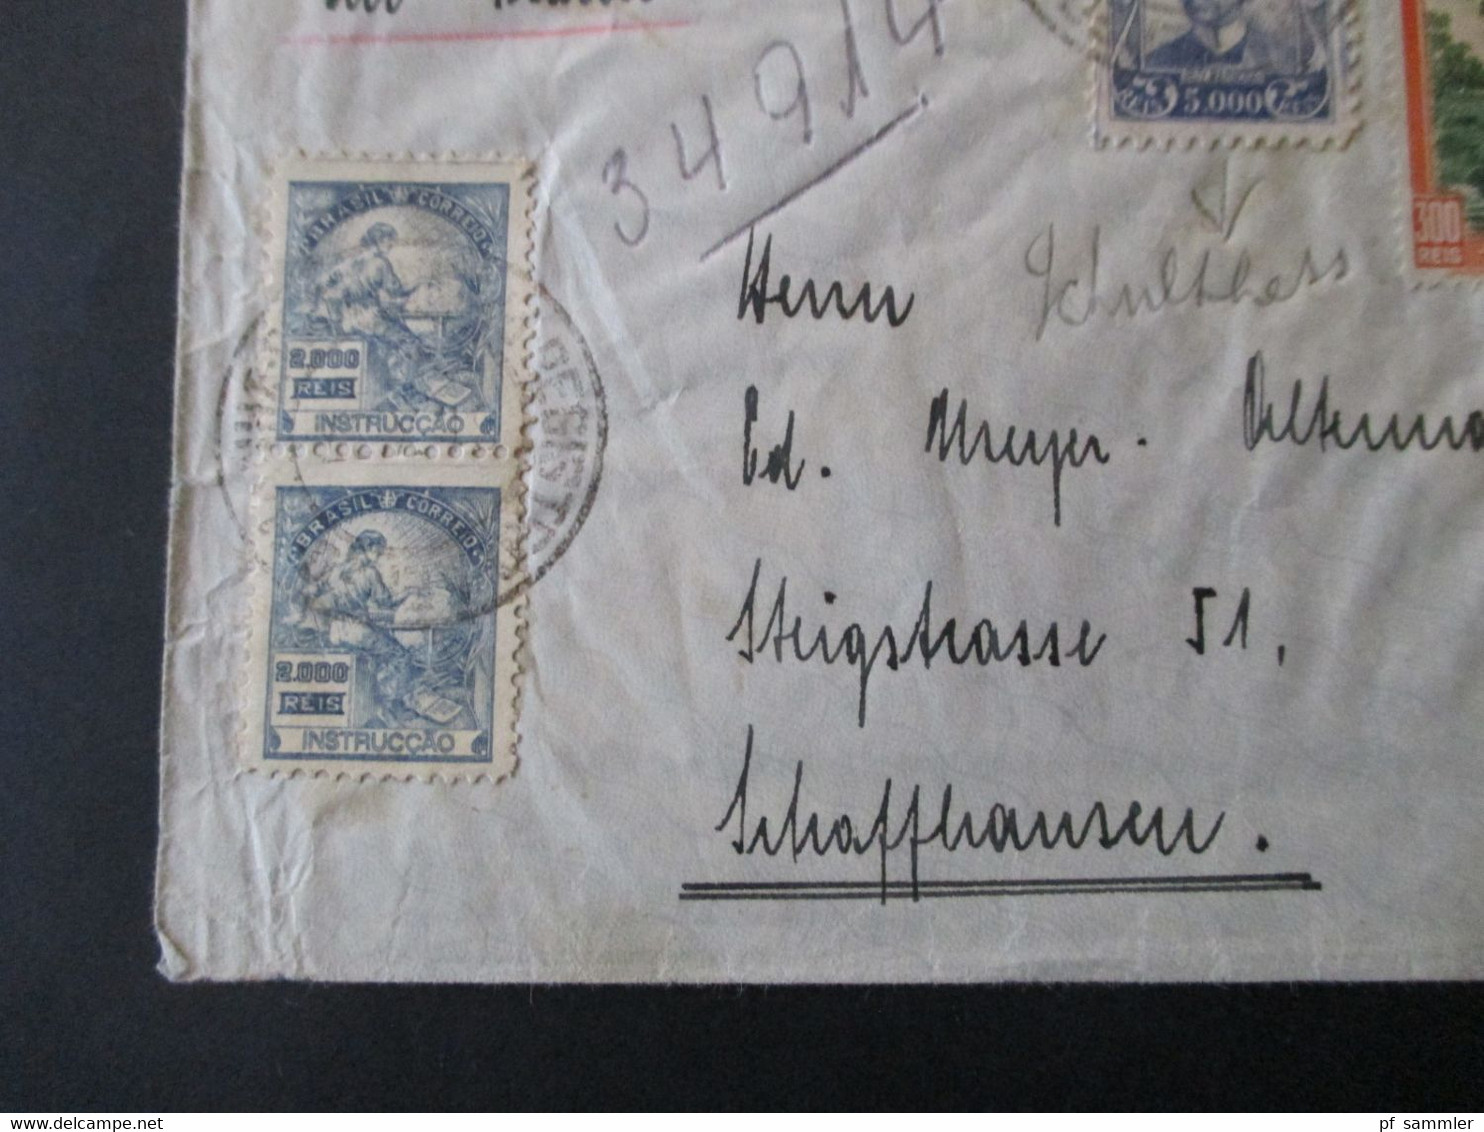 Brasilien 1937 Luftpost In Die Schweiz MiF Mit Fremdenverkehr Landschaften Umschlag Rene Hausheer Pernambuco - Lettres & Documents